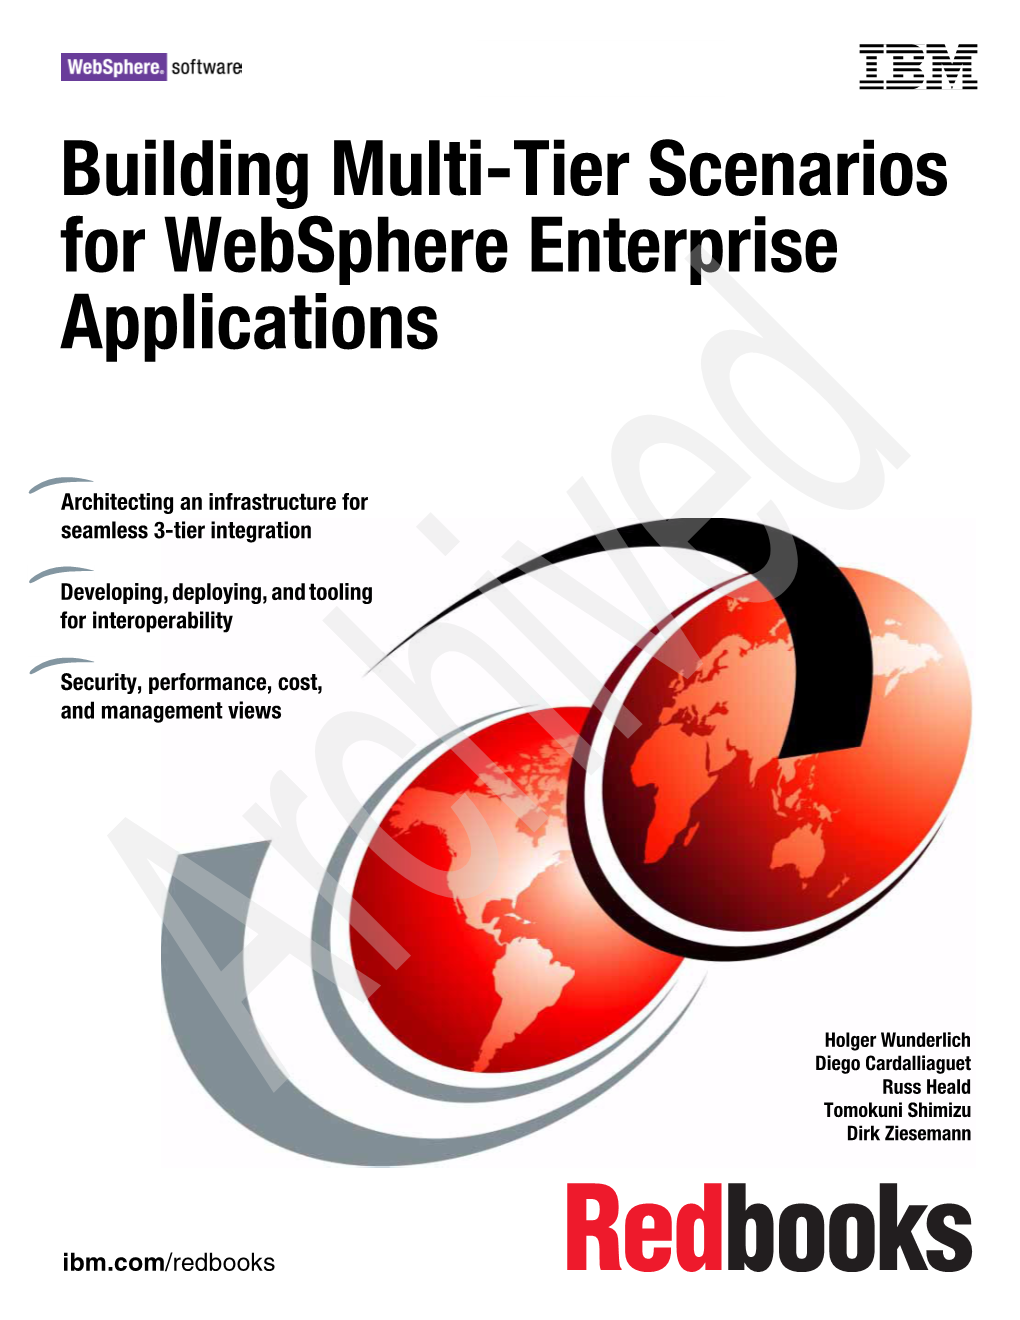 Building Multi-Tier Scenarios for Websphere Enterprise Applications